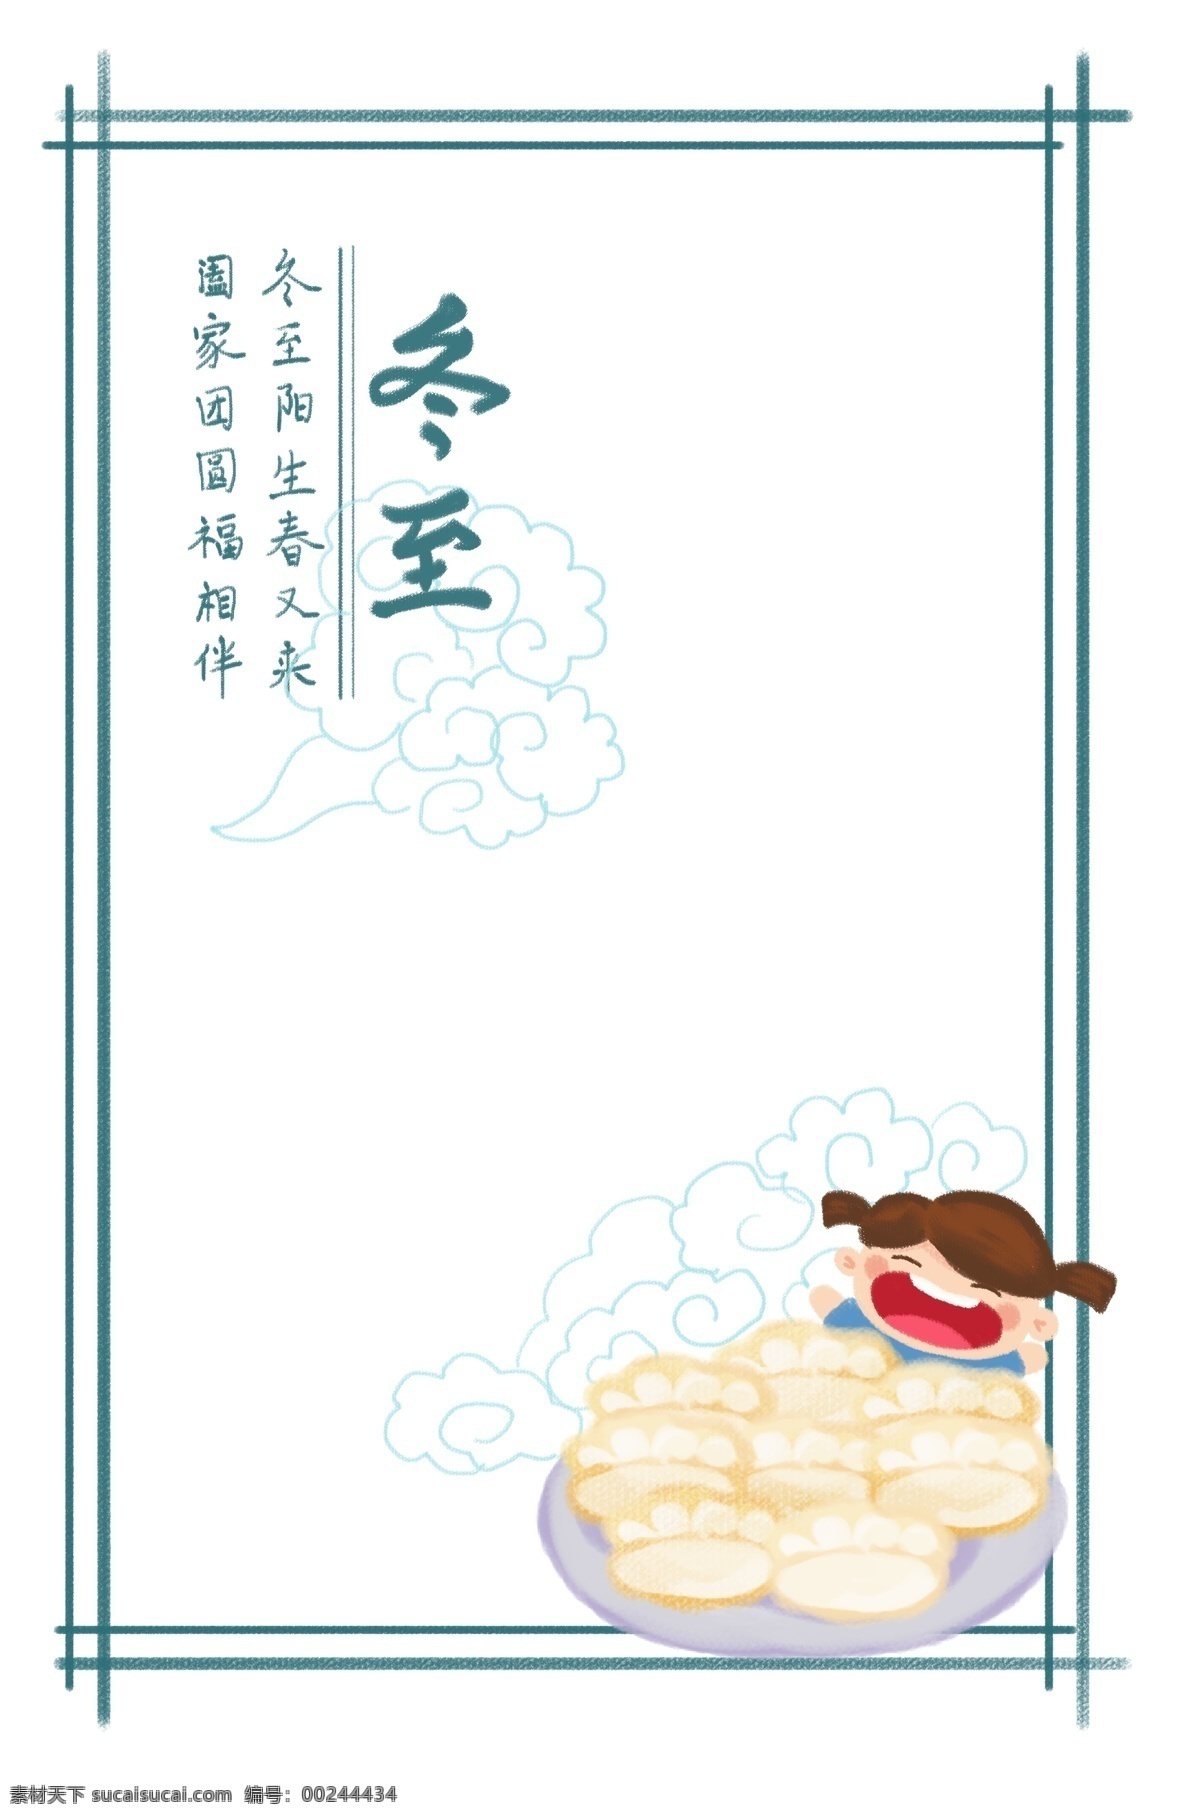 手绘 卡通 冬至 二十四节气 边框 吃饺子 饺子 卡通手绘边框 矩形边框 小女孩 可爱的框子 框子 手绘边框 插画